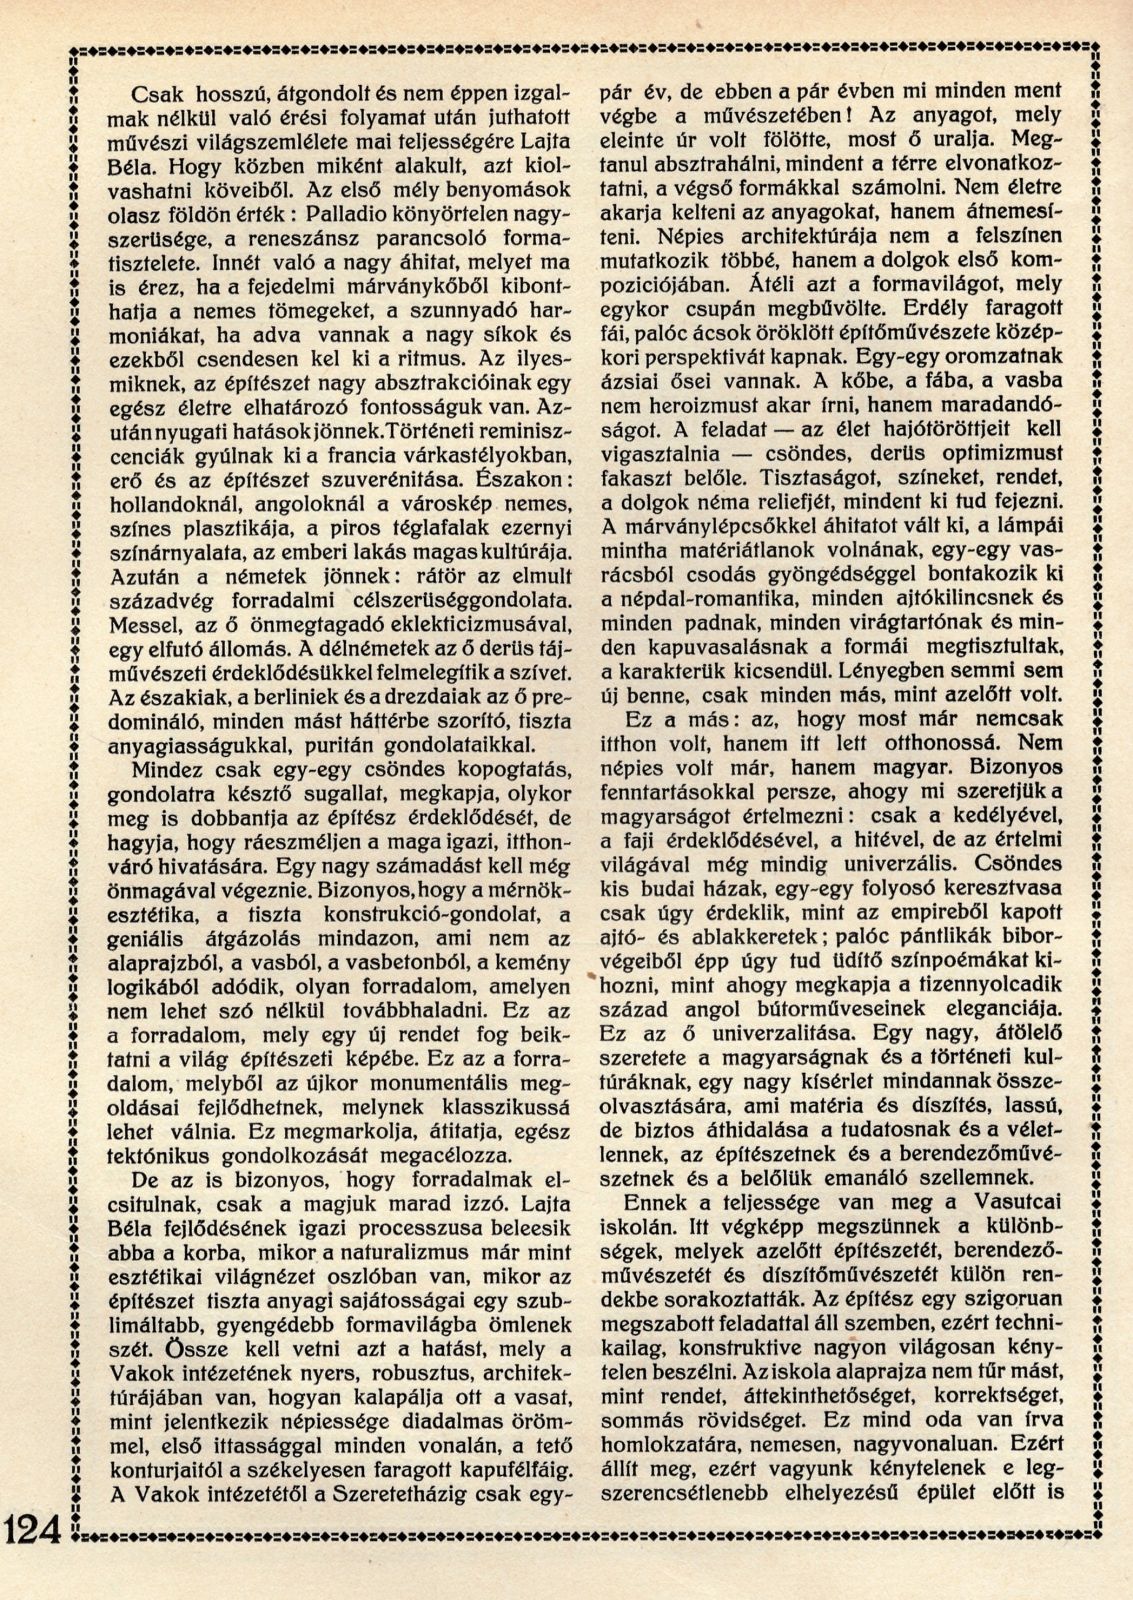 23_Magyar Iparművészet, 1914/3. 122. p.